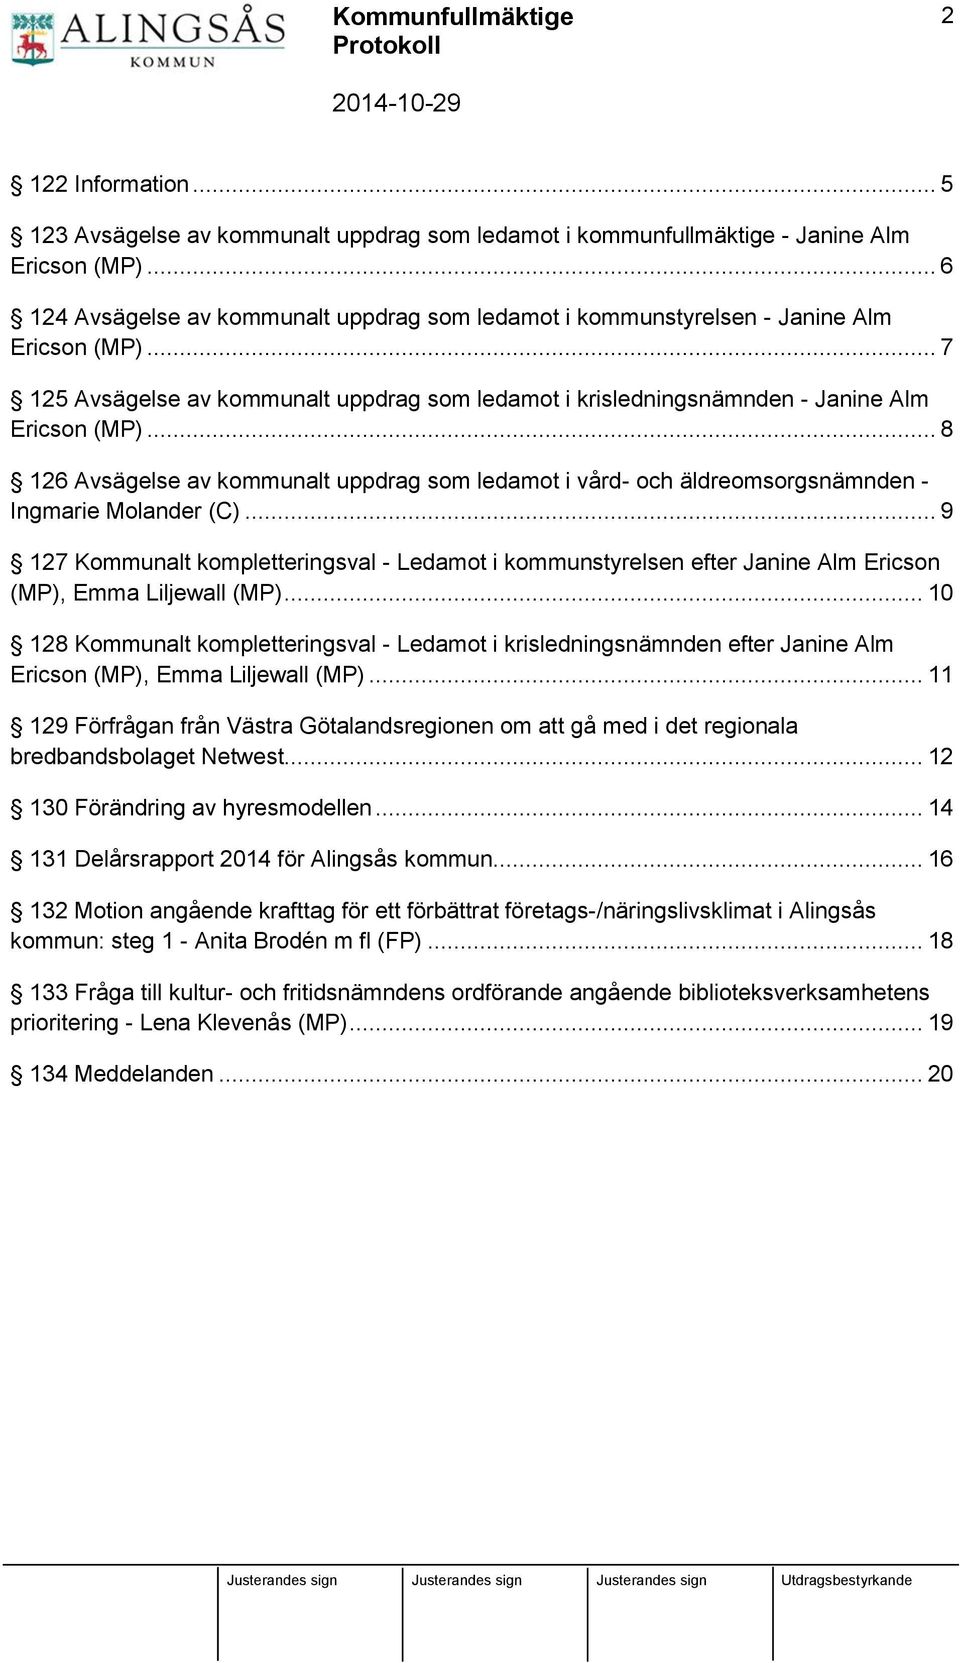 .. 8 126 Avsägelse av kommunalt uppdrag som ledamot i vård- och äldreomsorgsnämnden - Ingmarie Molander (C).